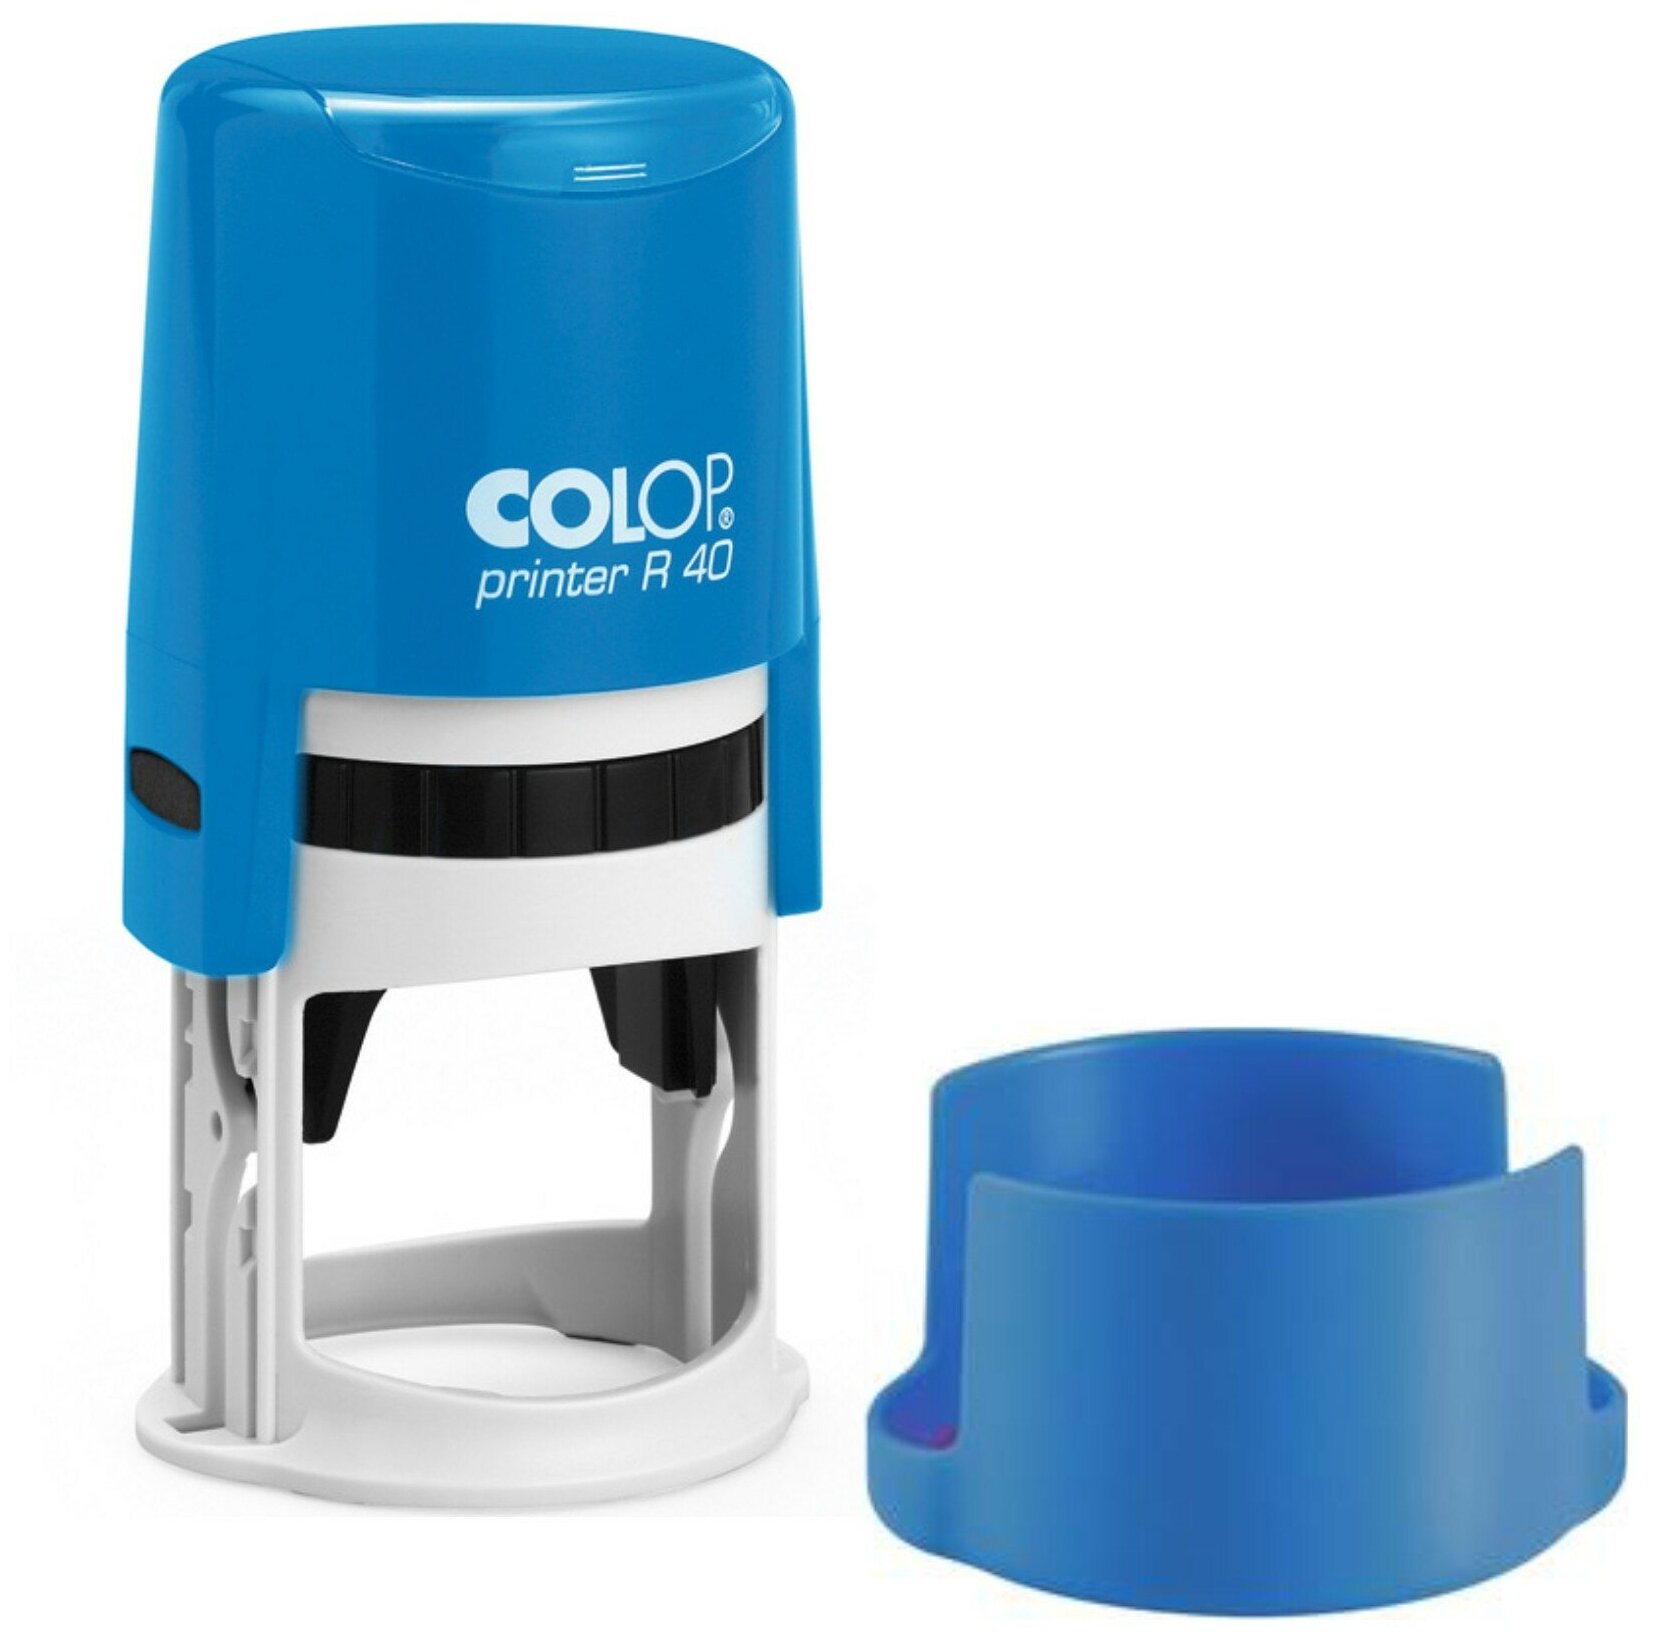 Оснастка для штампа COLOP Printer R40 cover (с крышкой), D41,5 мм, круг